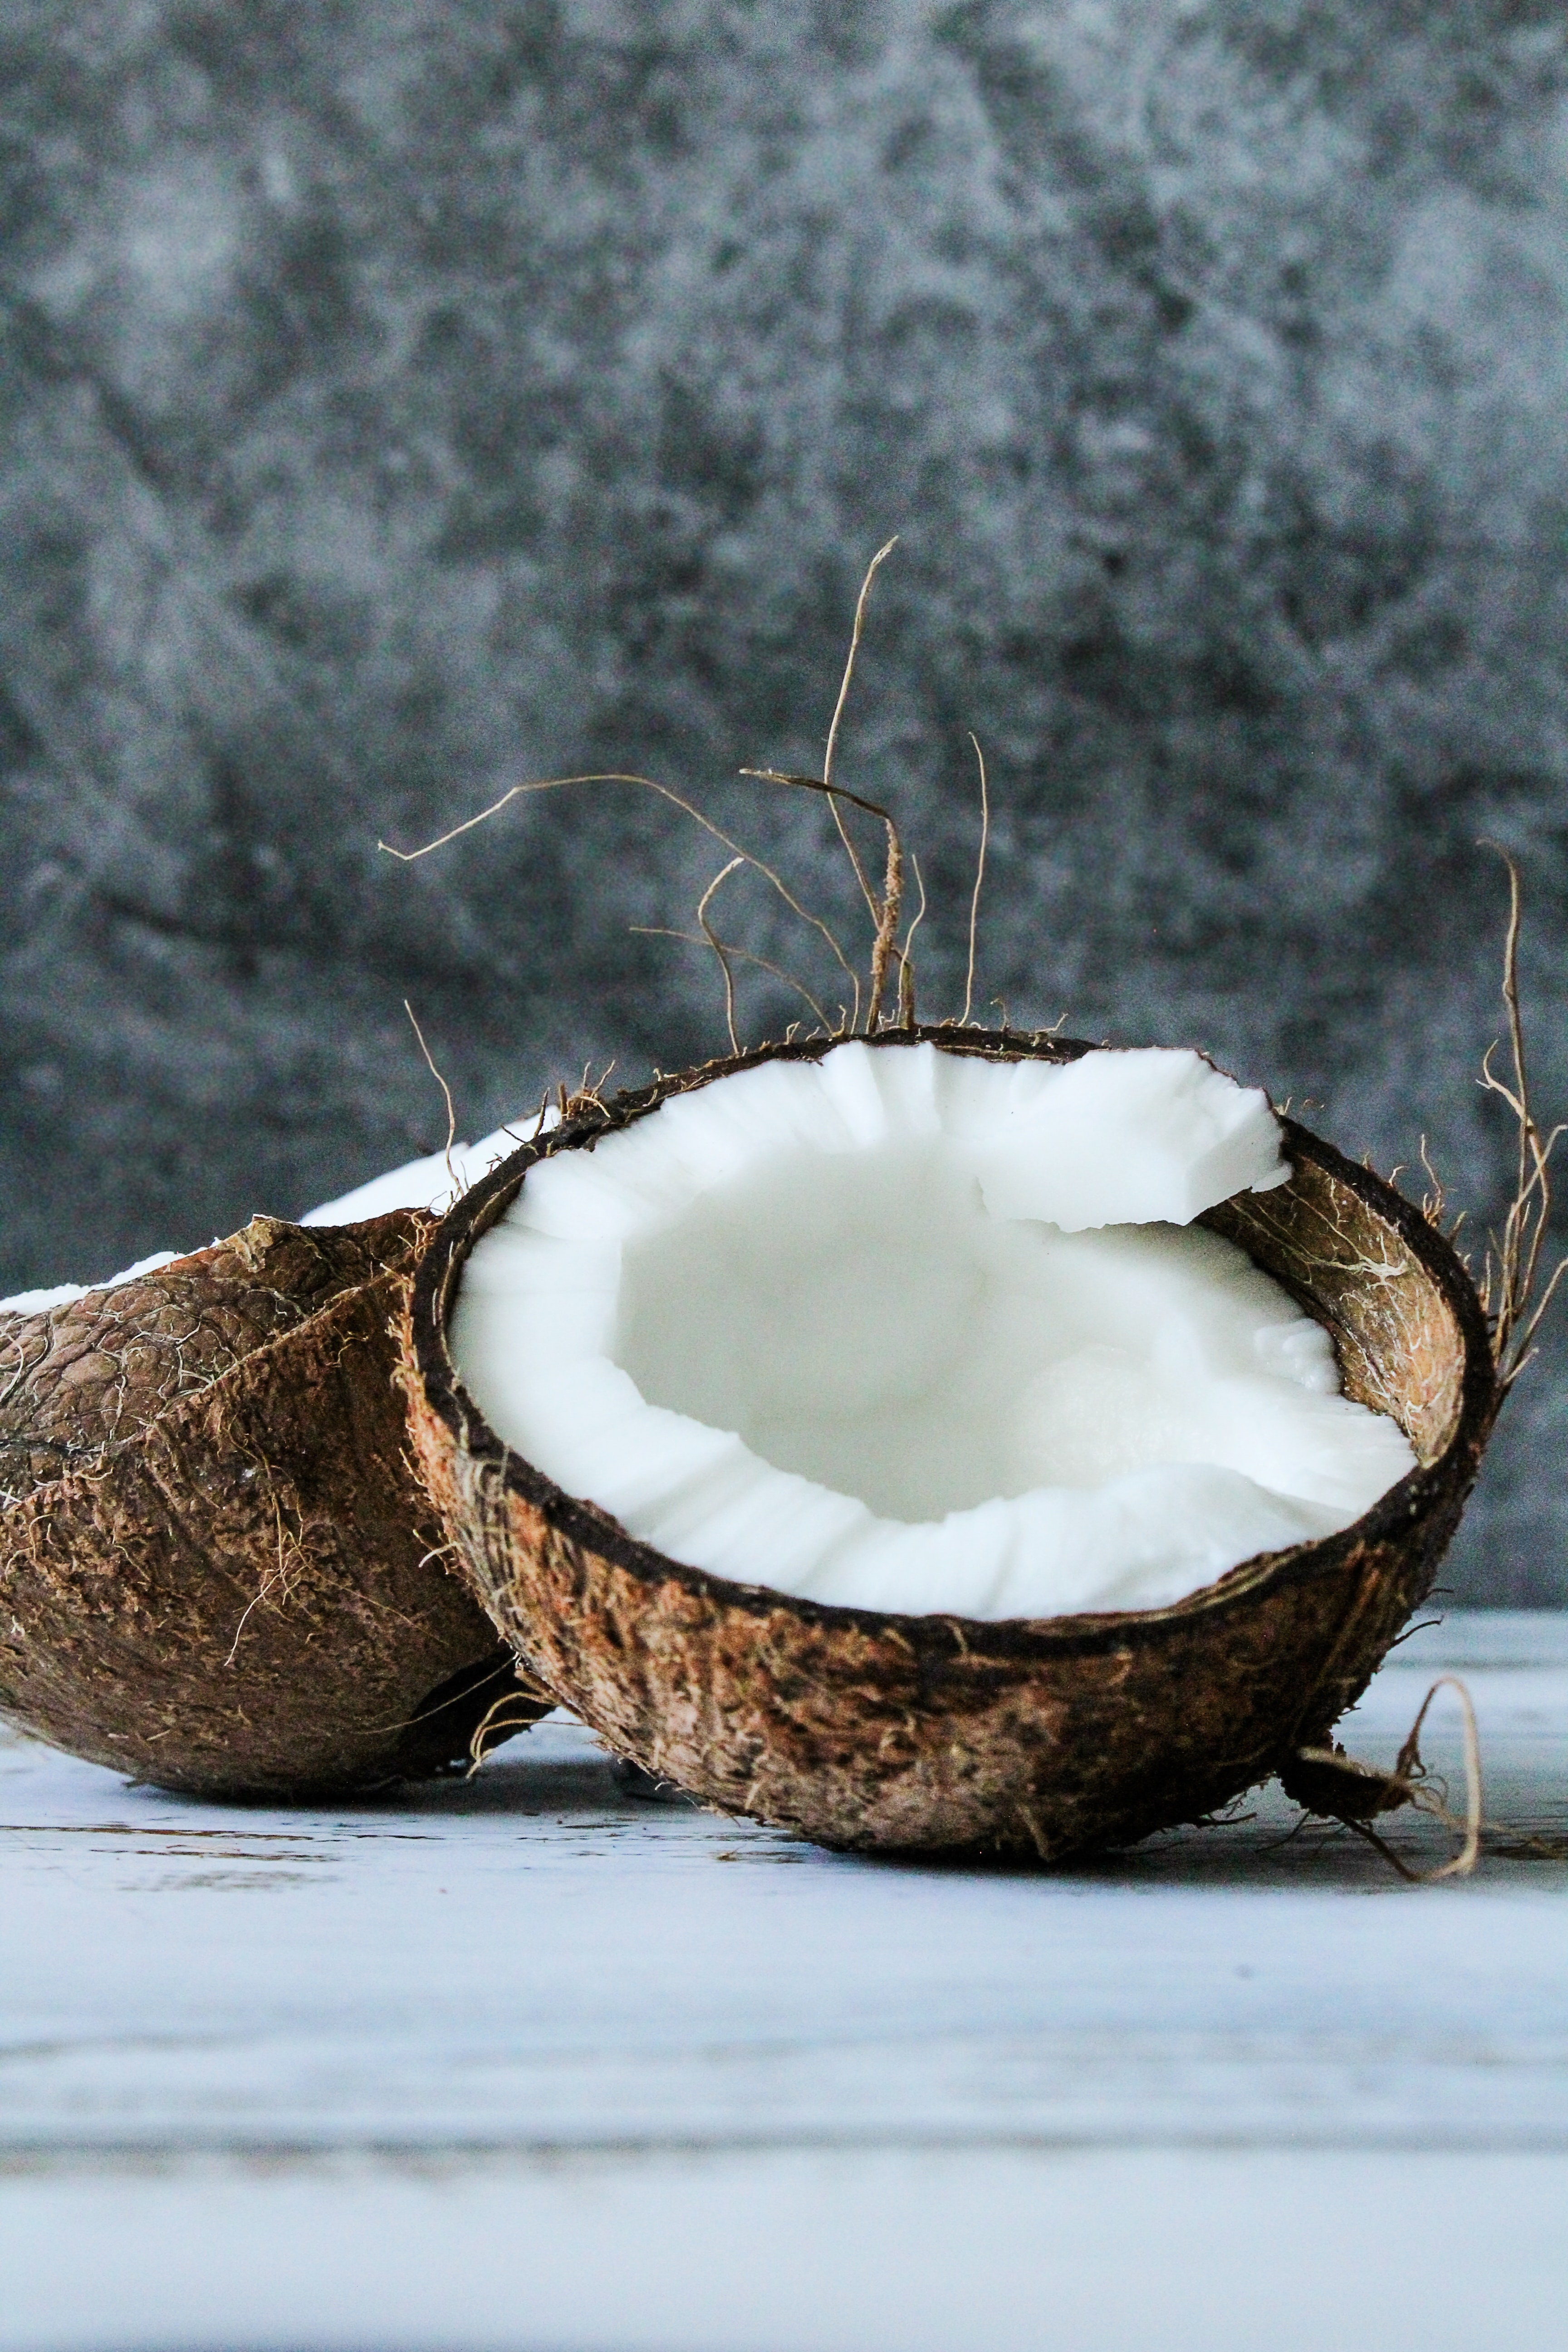 El azúcar de coco se extrae de la savia de la flor de coco